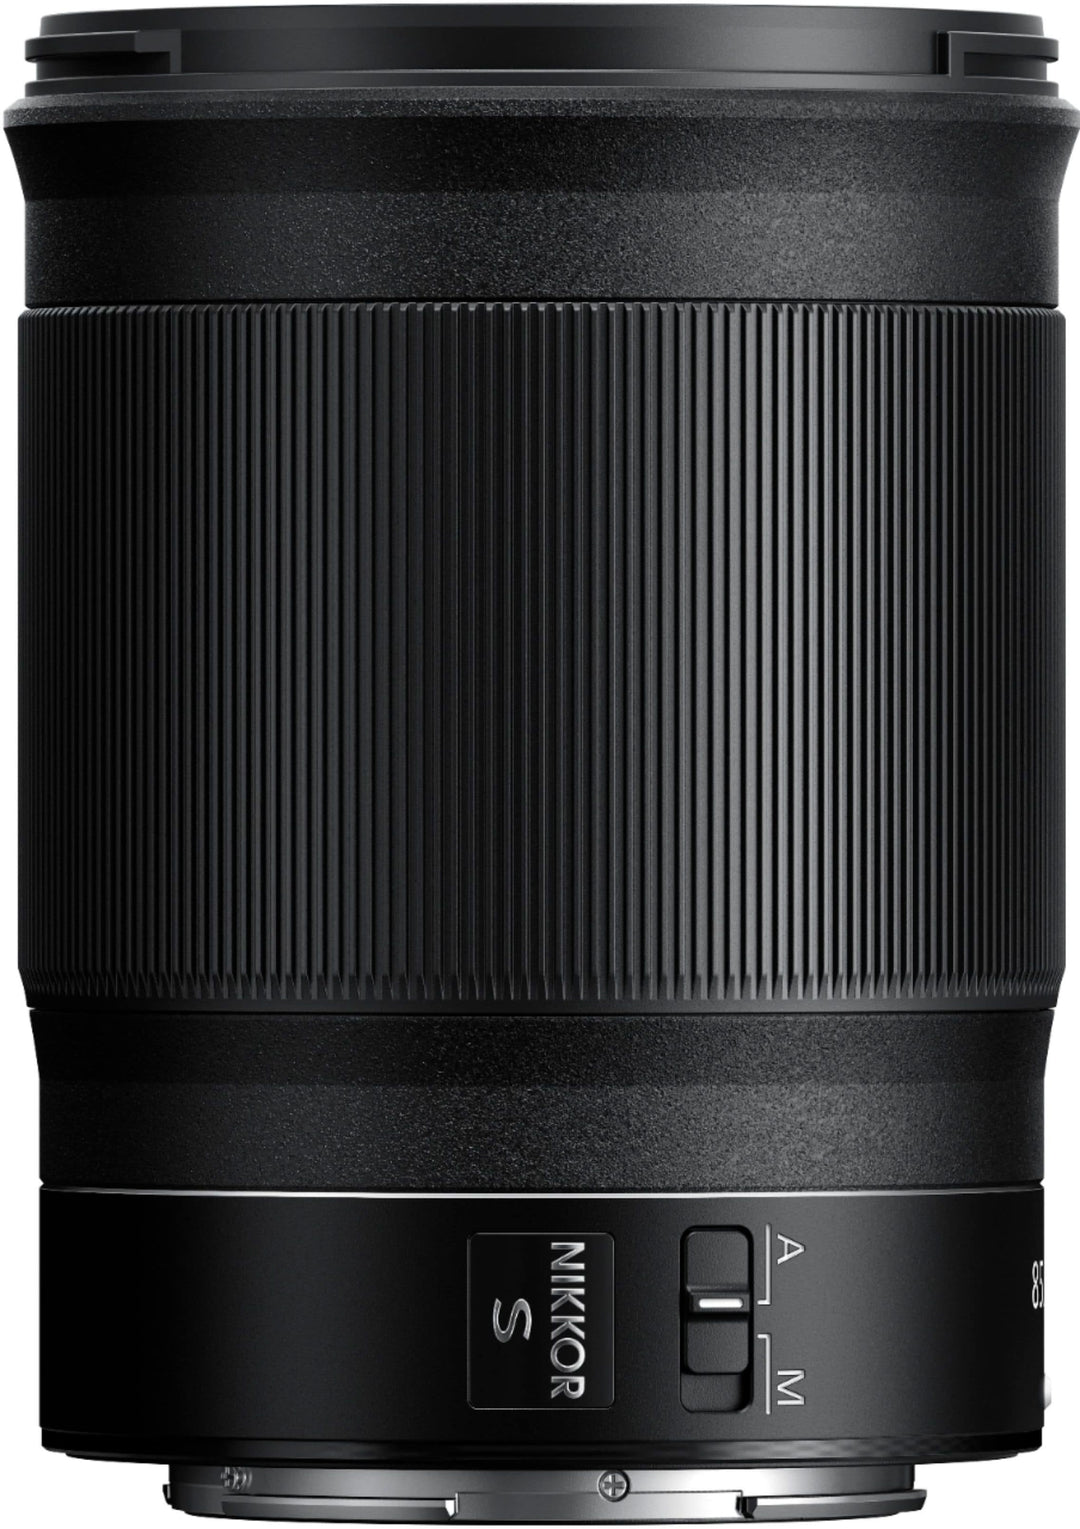 NIKKOR Z 85mm f/1.8 S Telephoto Lens for Nikon Z Cameras - Black_6